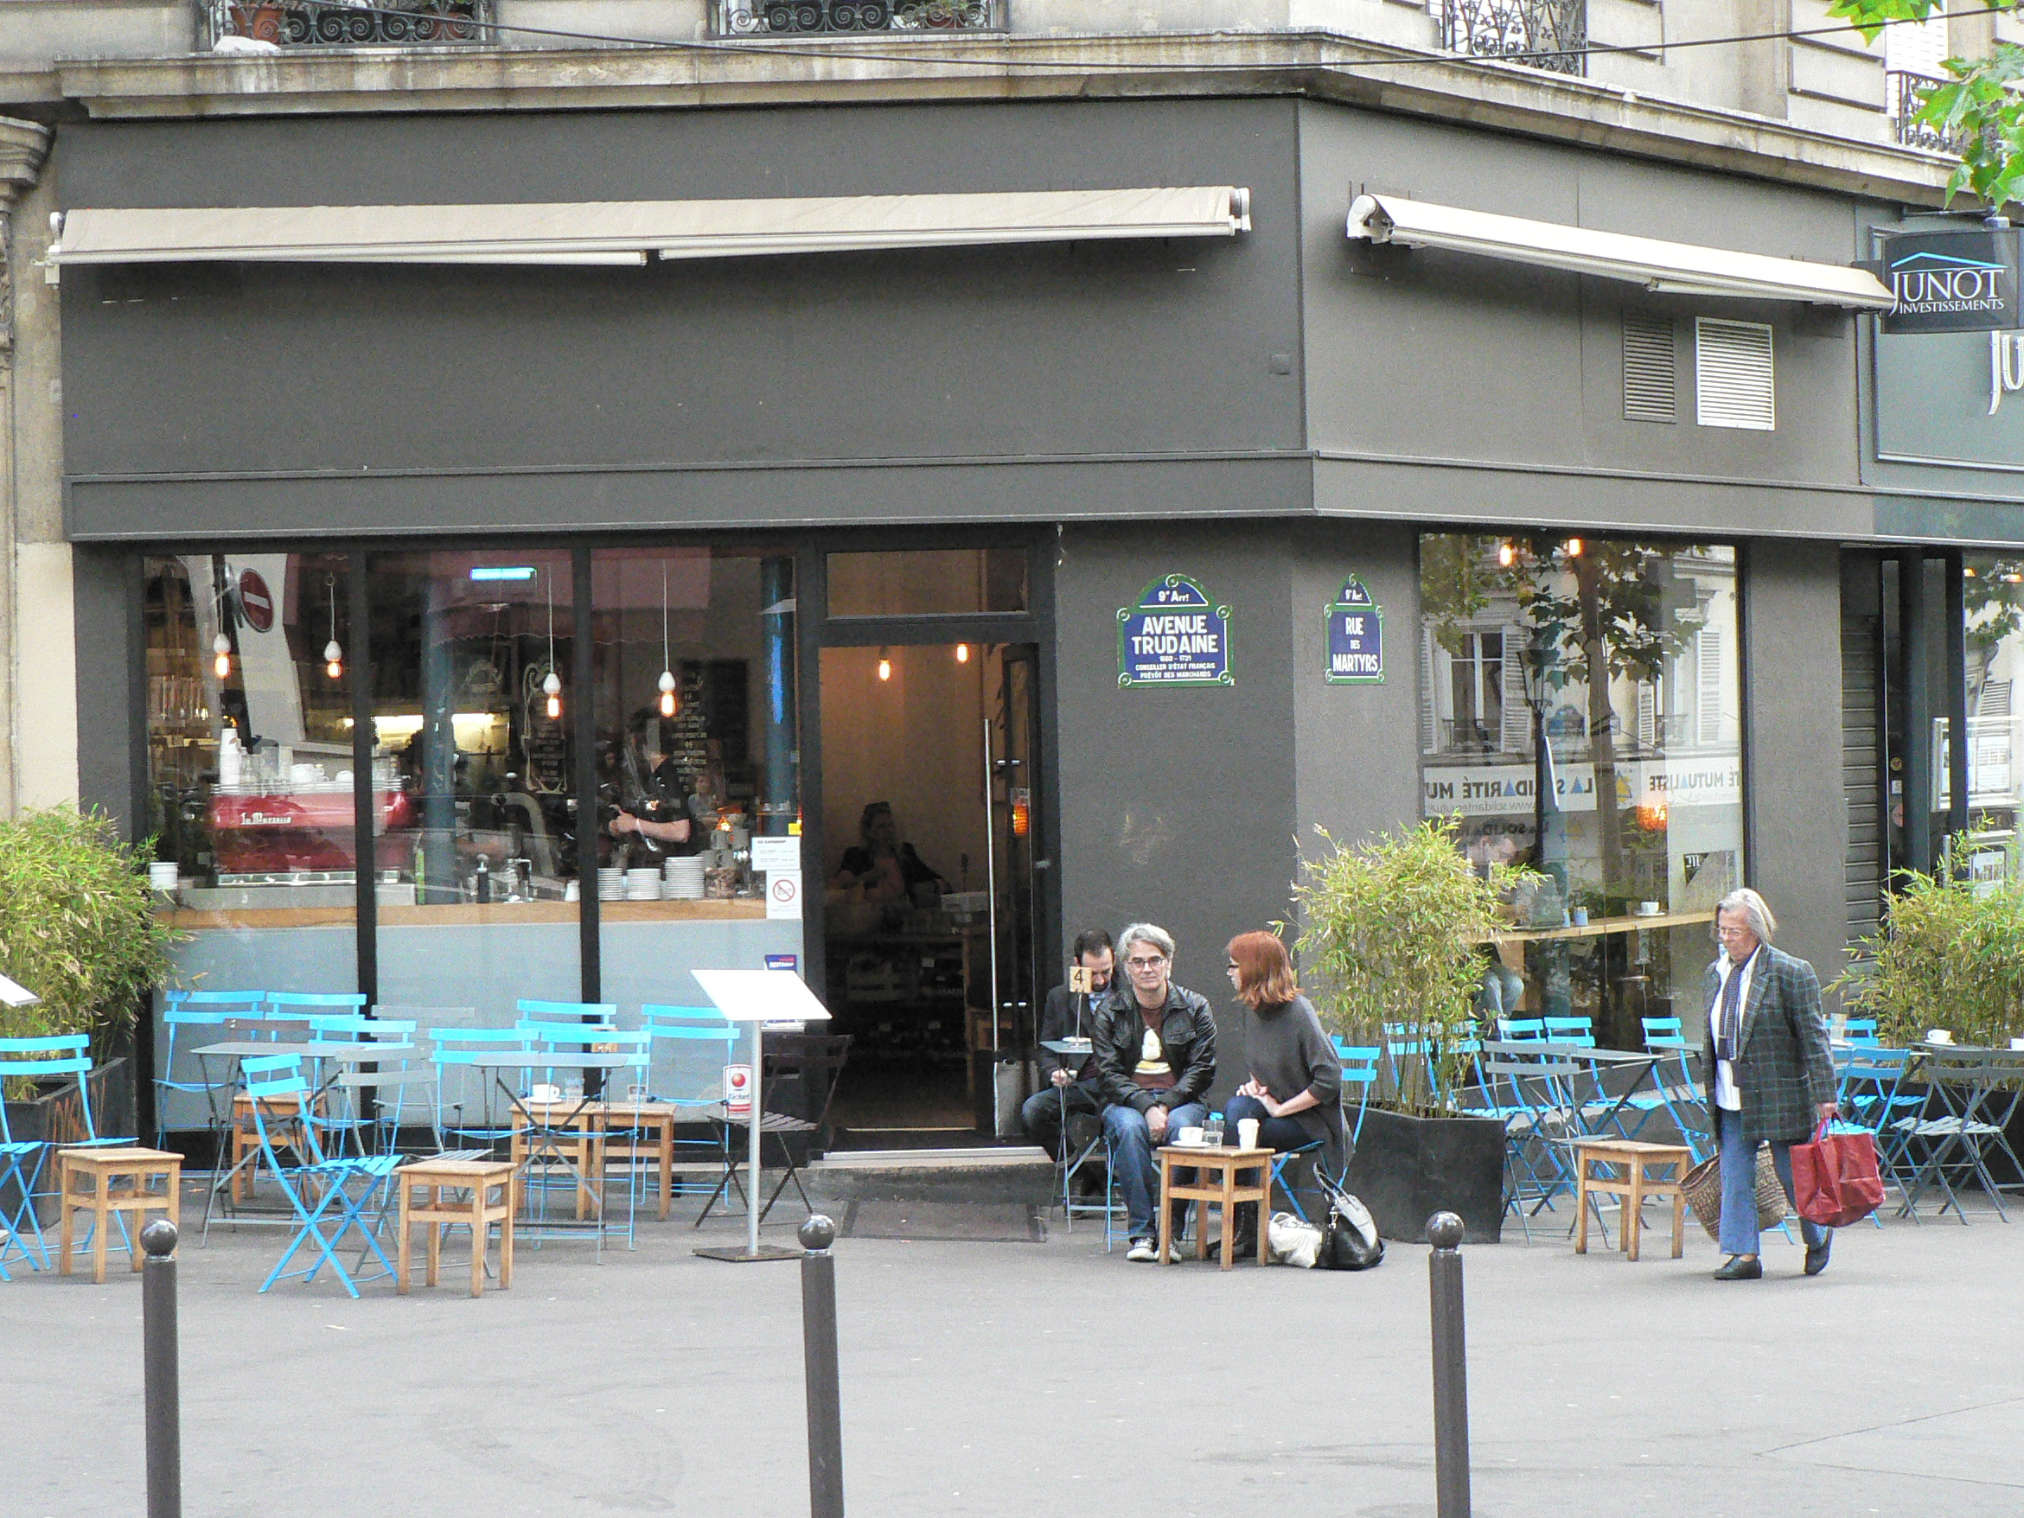 KB Caféshop, 62 rue des Martyrs, 75009 Paris